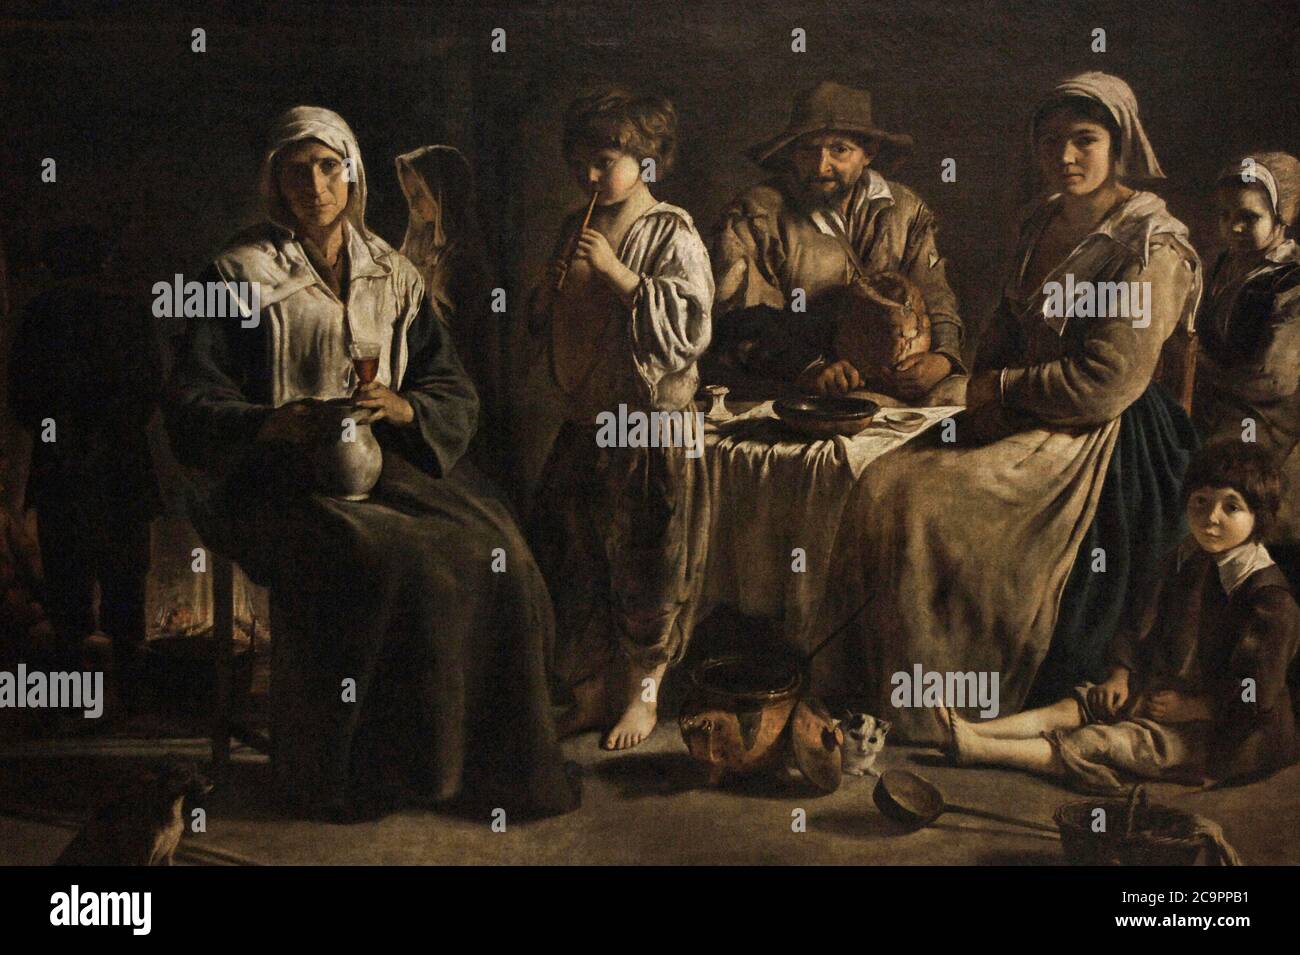 Louis le Nain (1593-1648). Pintor barroco francés. Familia de campesinos en un interior. Museo del Louvre. París. Francia. Foto Stock